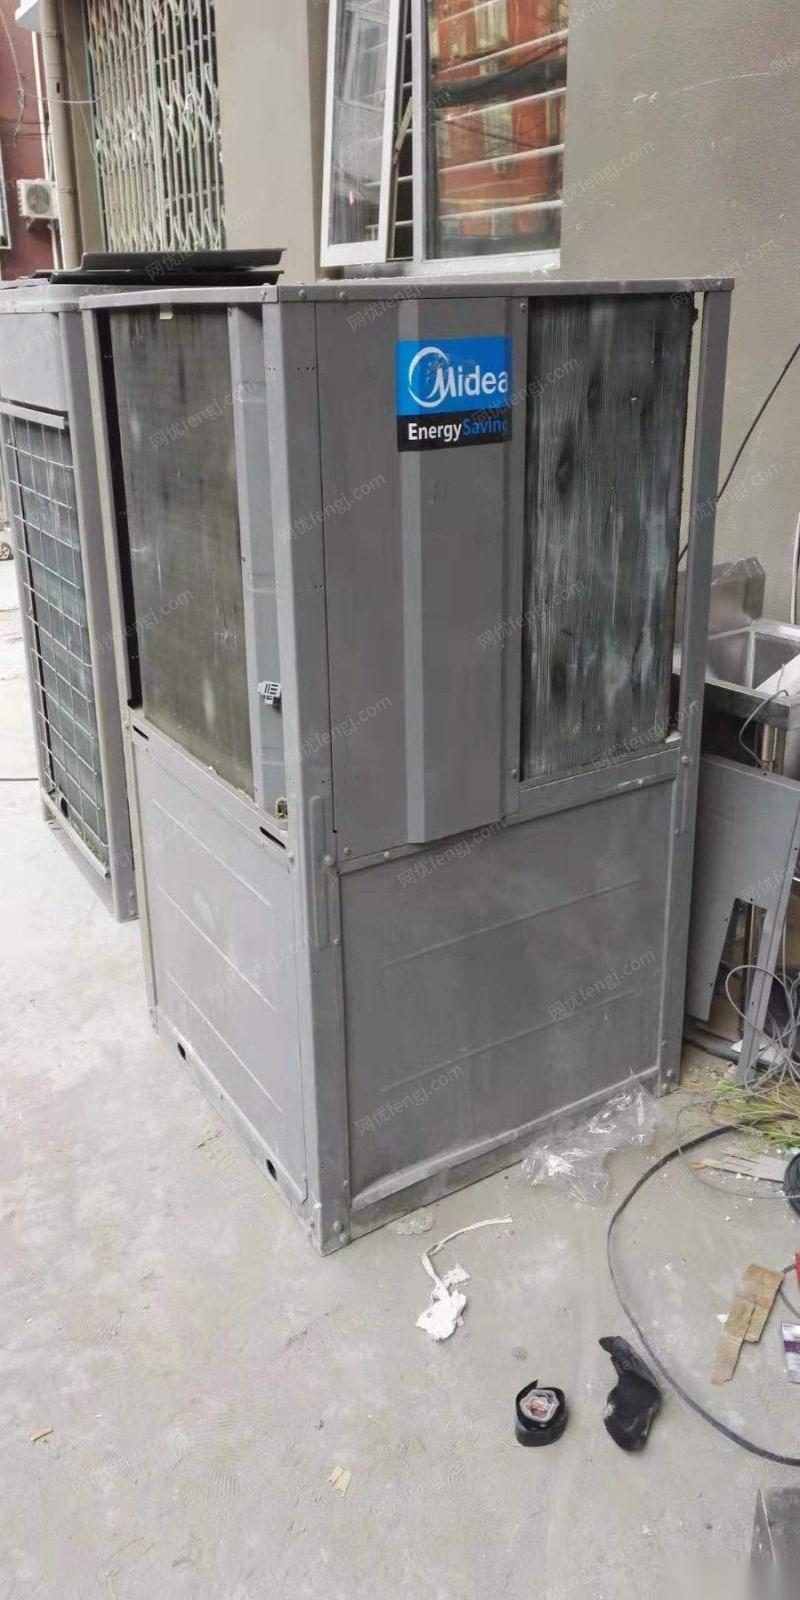 北京西城区我公司搬迁　两台闲置9.3kw空气能热泵低价转让 15000元